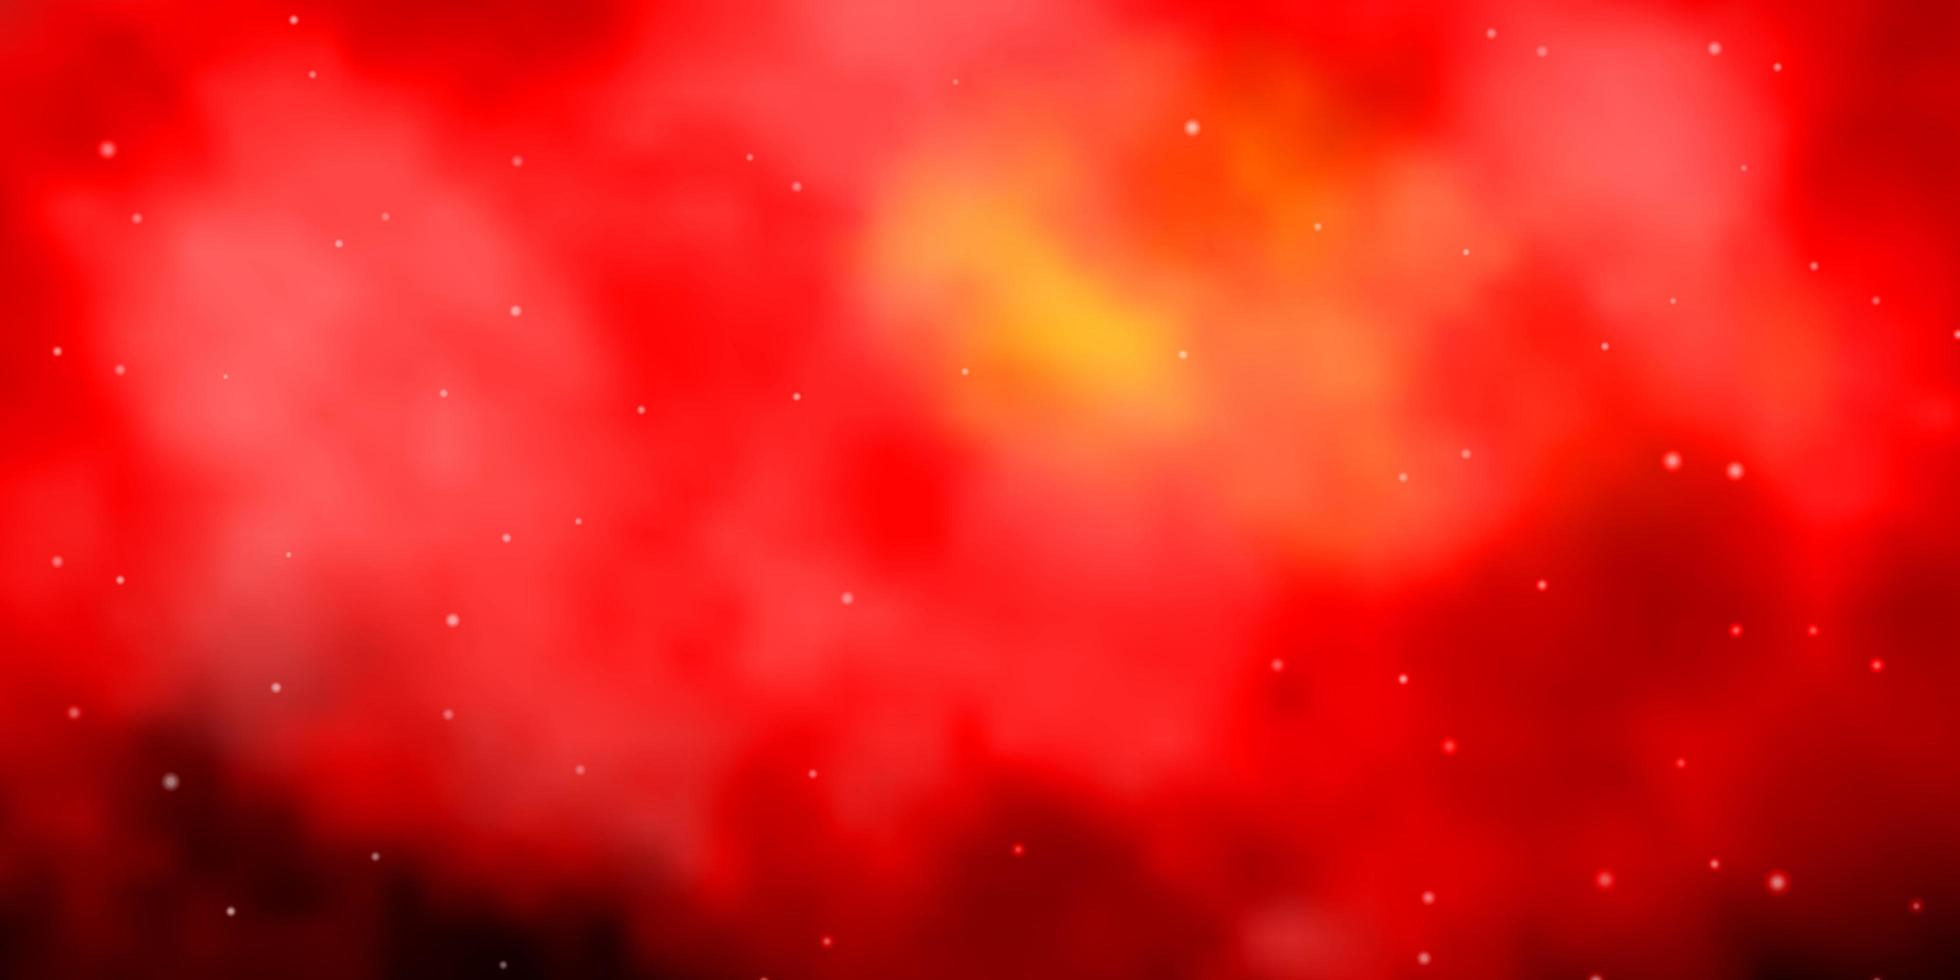 sfondo vettoriale rosso scuro, giallo con stelle piccole e grandi.